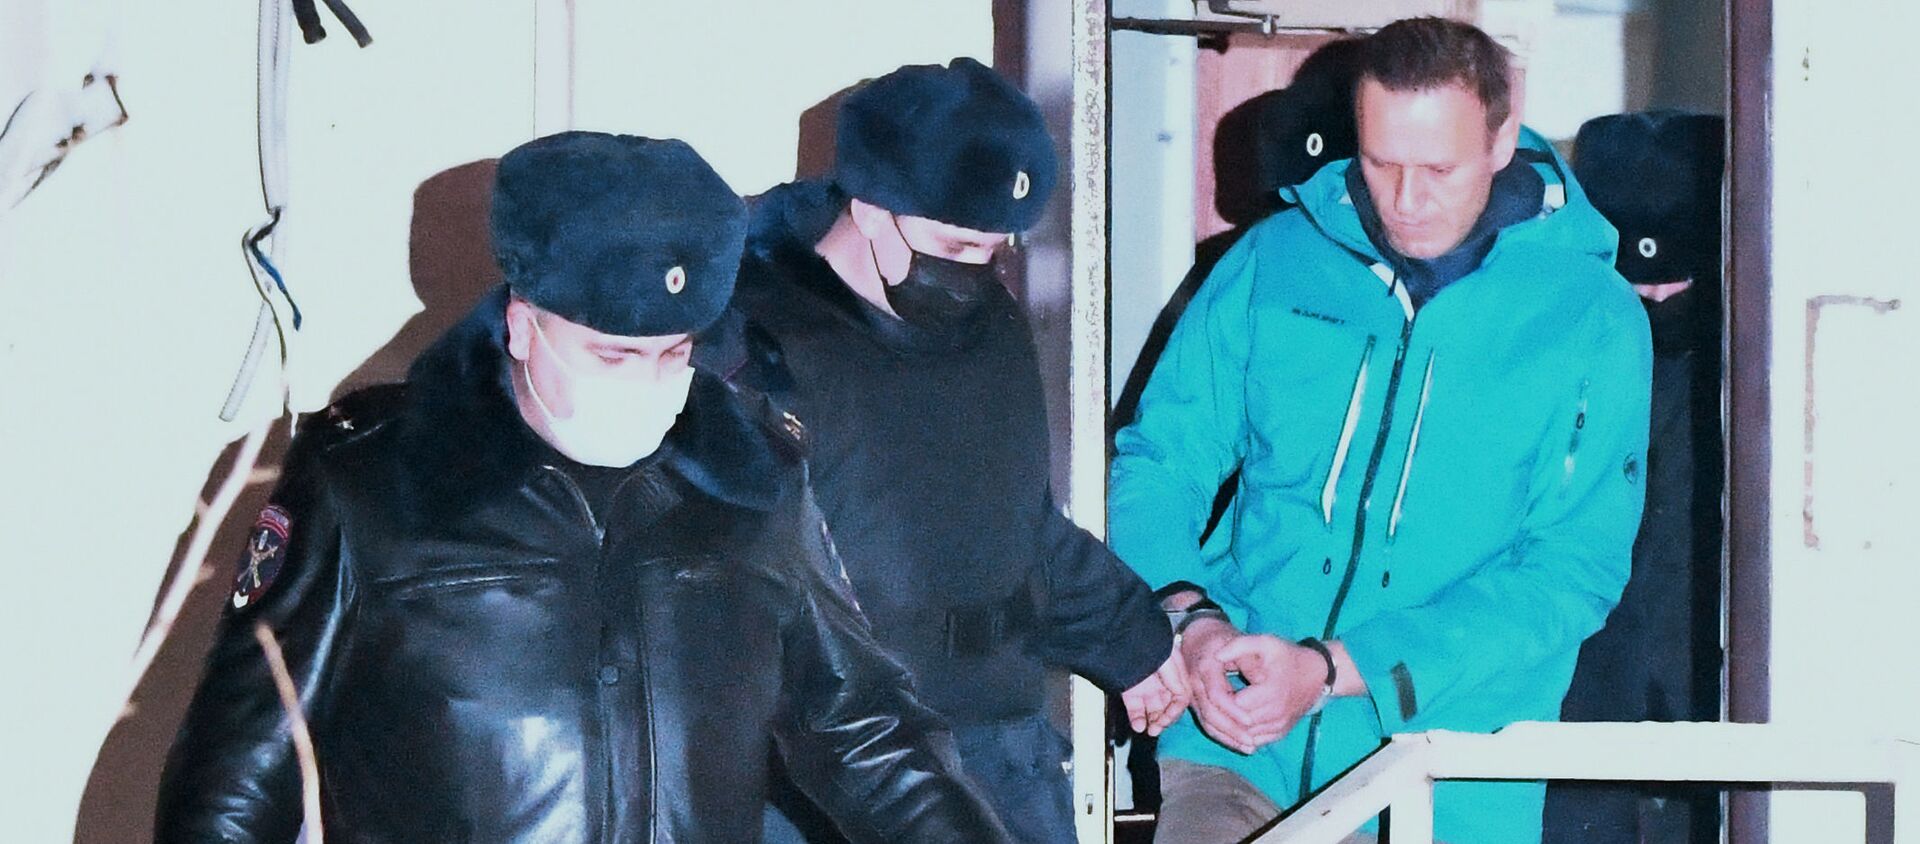 Сотрудники полиции выводят Алексея Навального из здания 2-го отдела полиции Управления МВД России по г. о. Химки - Sputnik Узбекистан, 1920, 23.01.2021